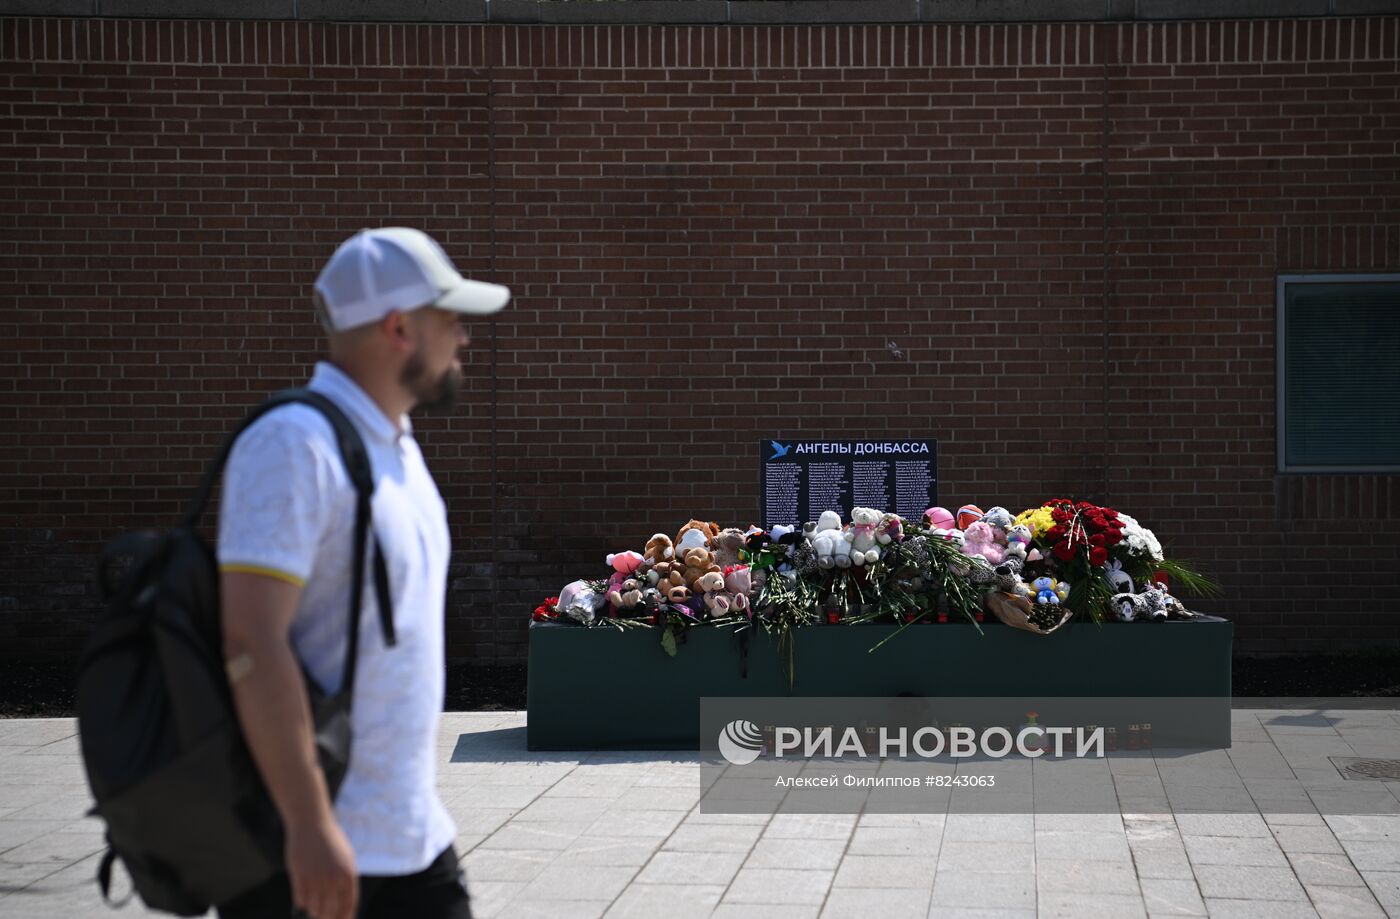 Стенд памяти о жертвах Донбасса на площади Донецкой Народной Республики